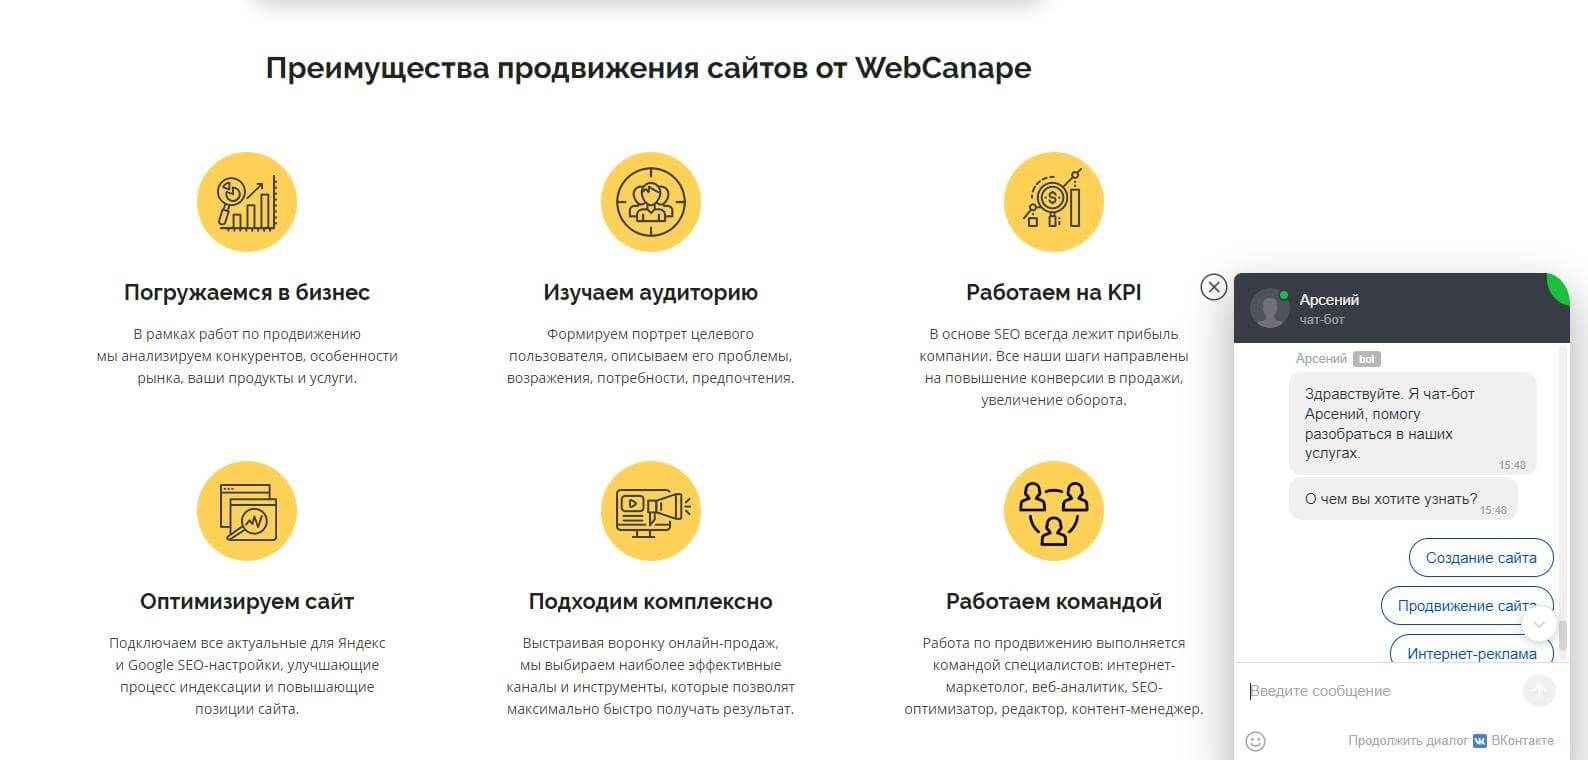 чат-бот WebCanape